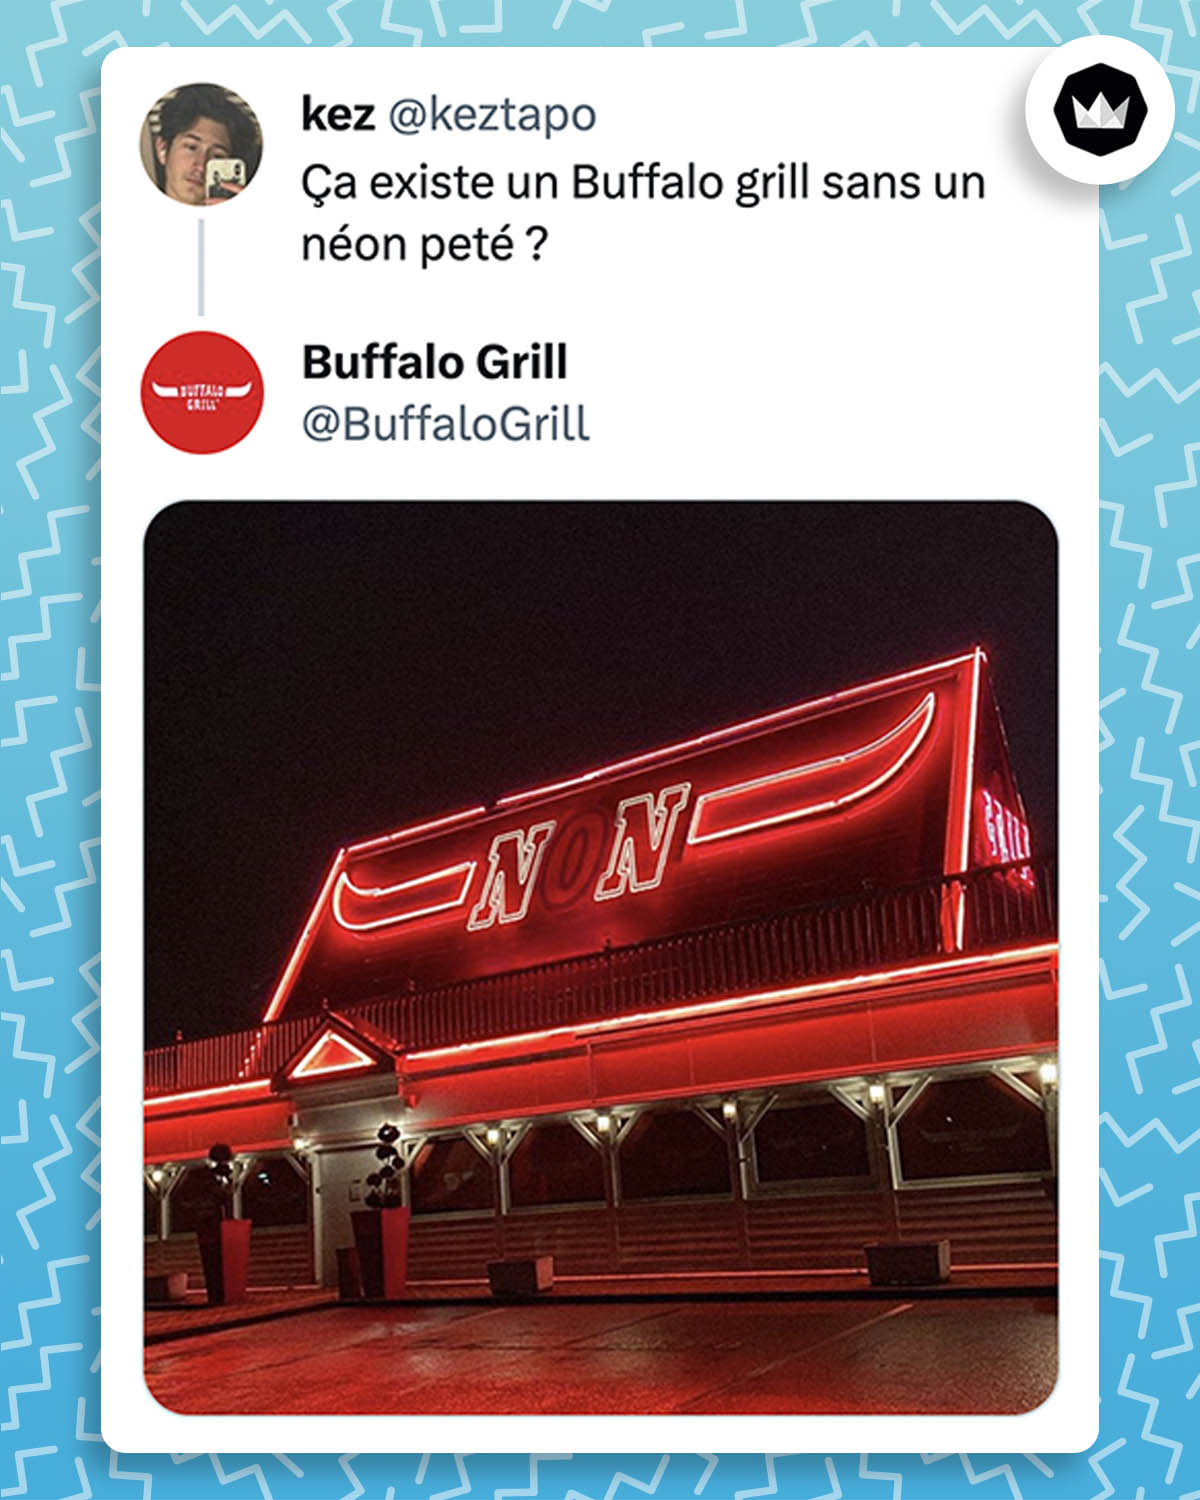 @keztapo : Ça existe un Buffalo grill sans un néon peté ?
Buffalo grill a répondu avec une photo d'une devanture d'un de ses restaurant avec un "NON" écrit avec des néons et le O n'est pas éclairé.